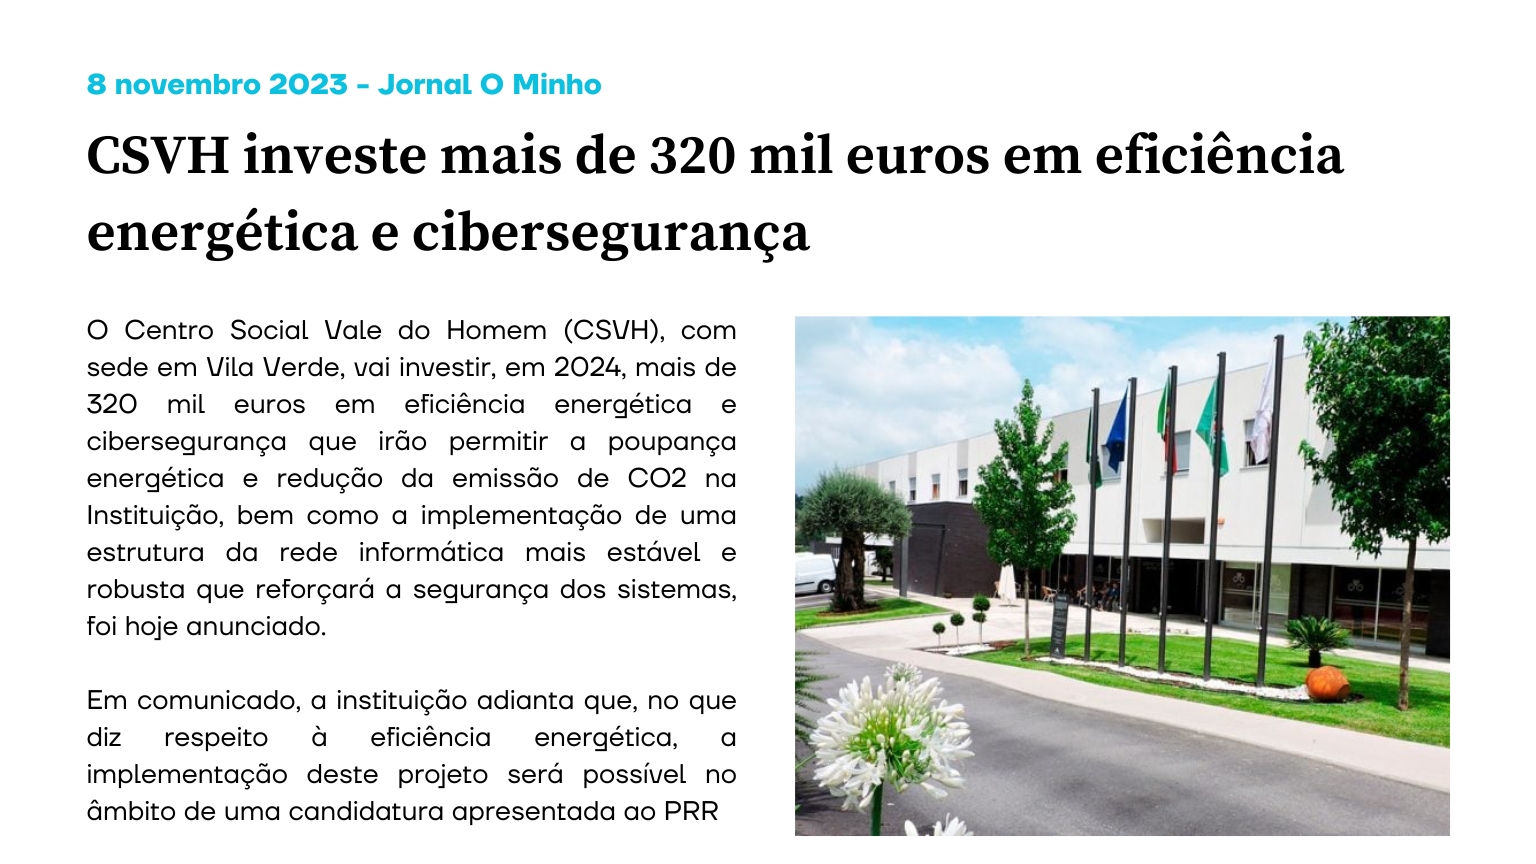 CSVH investe mais de 320 mil euros em eficiência energética e cibersegurança